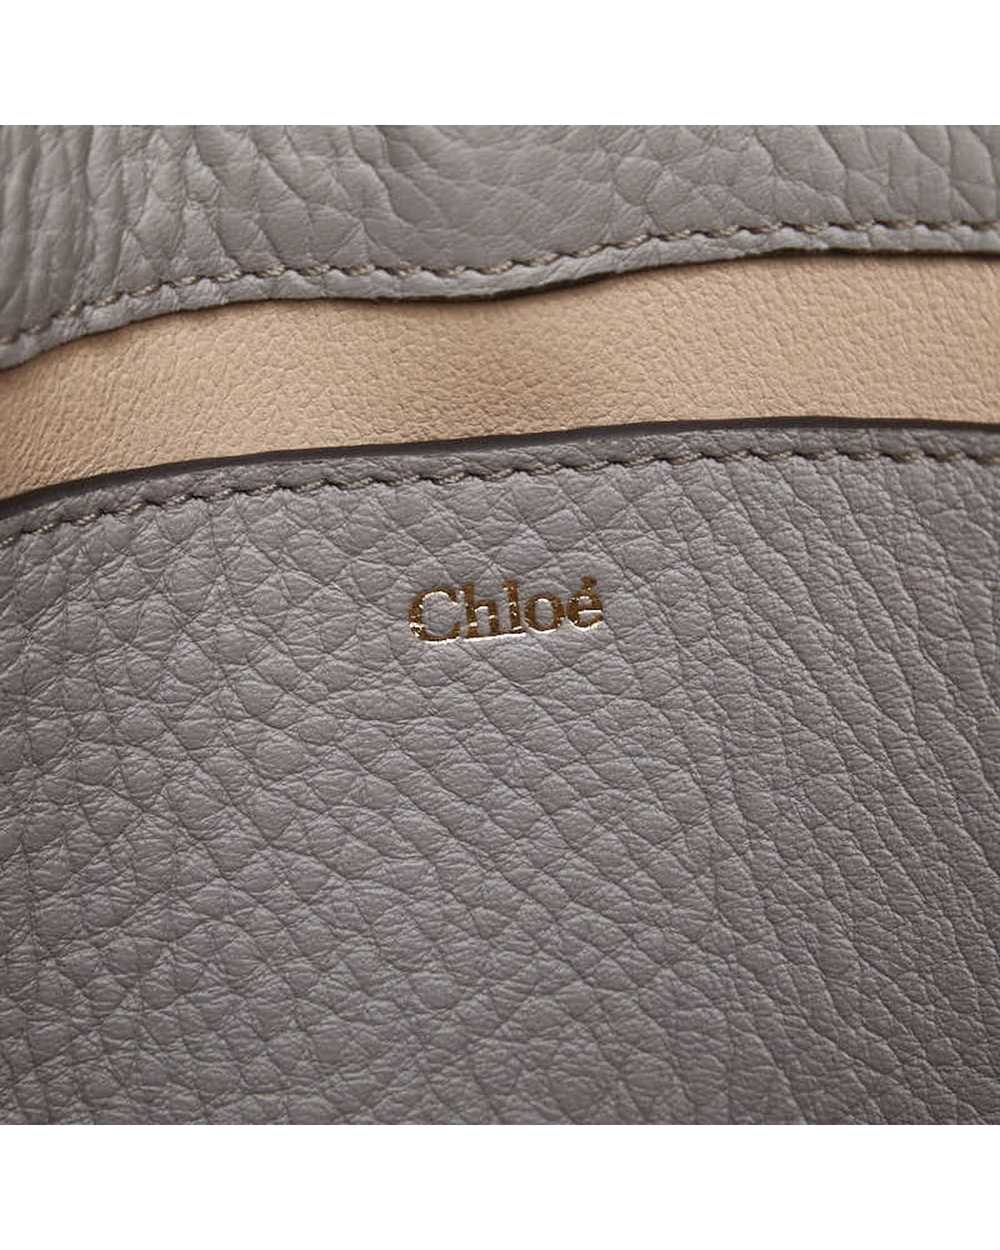 Chloe Chloe Grey Alphabet Clutch Bag - image 6